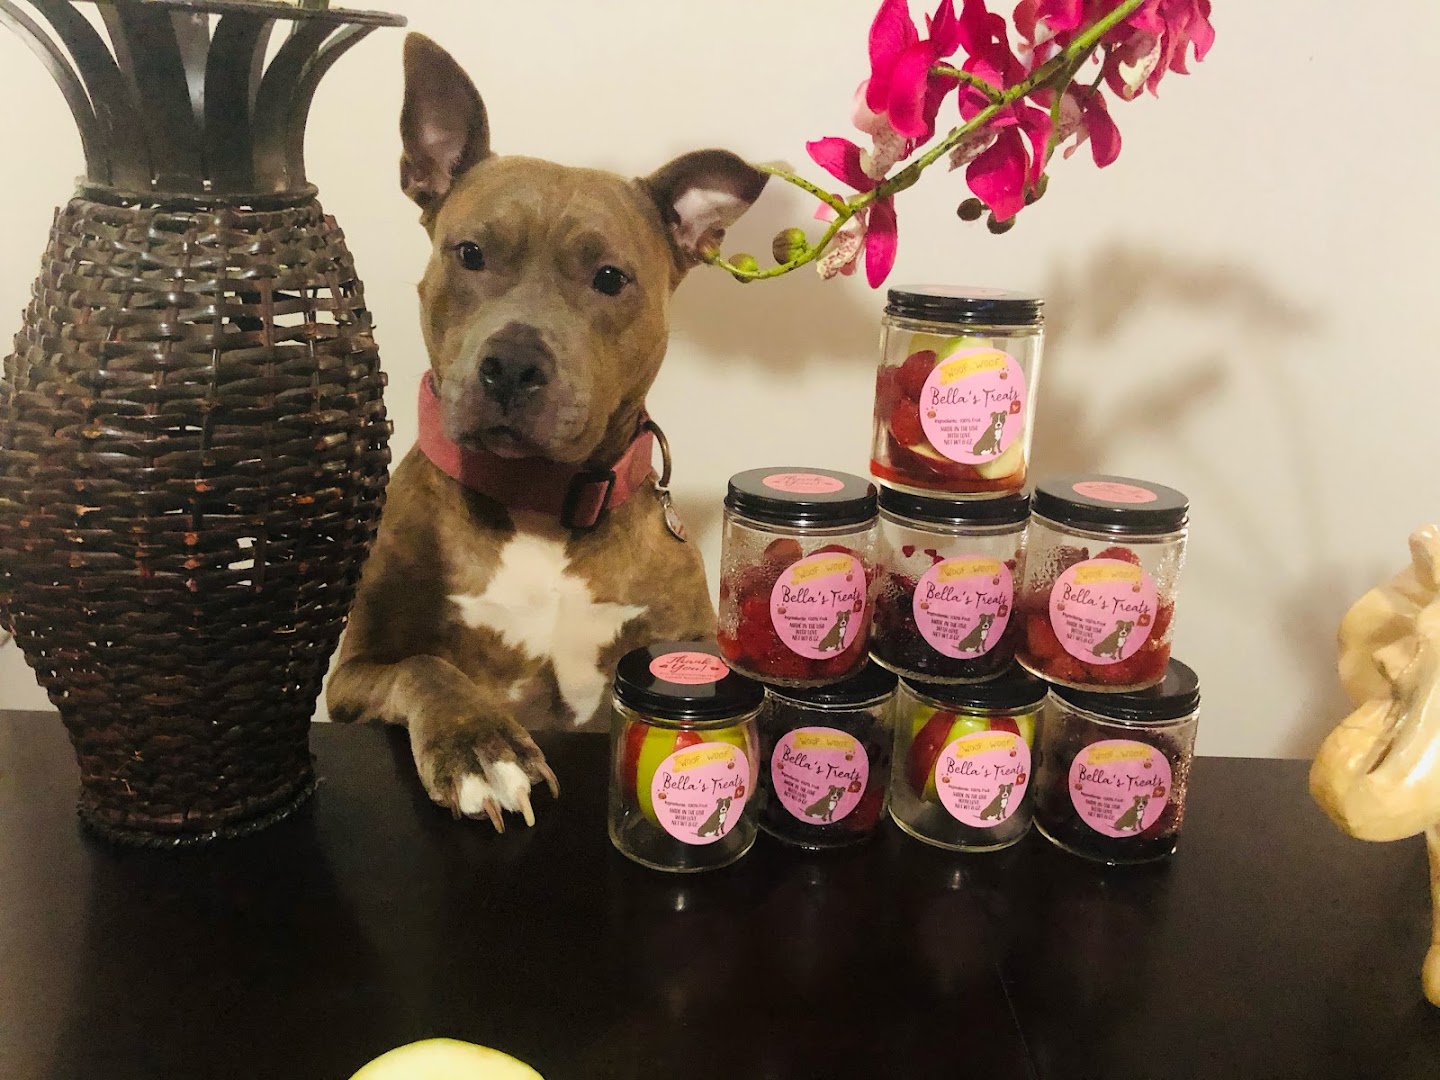 Bella's treats